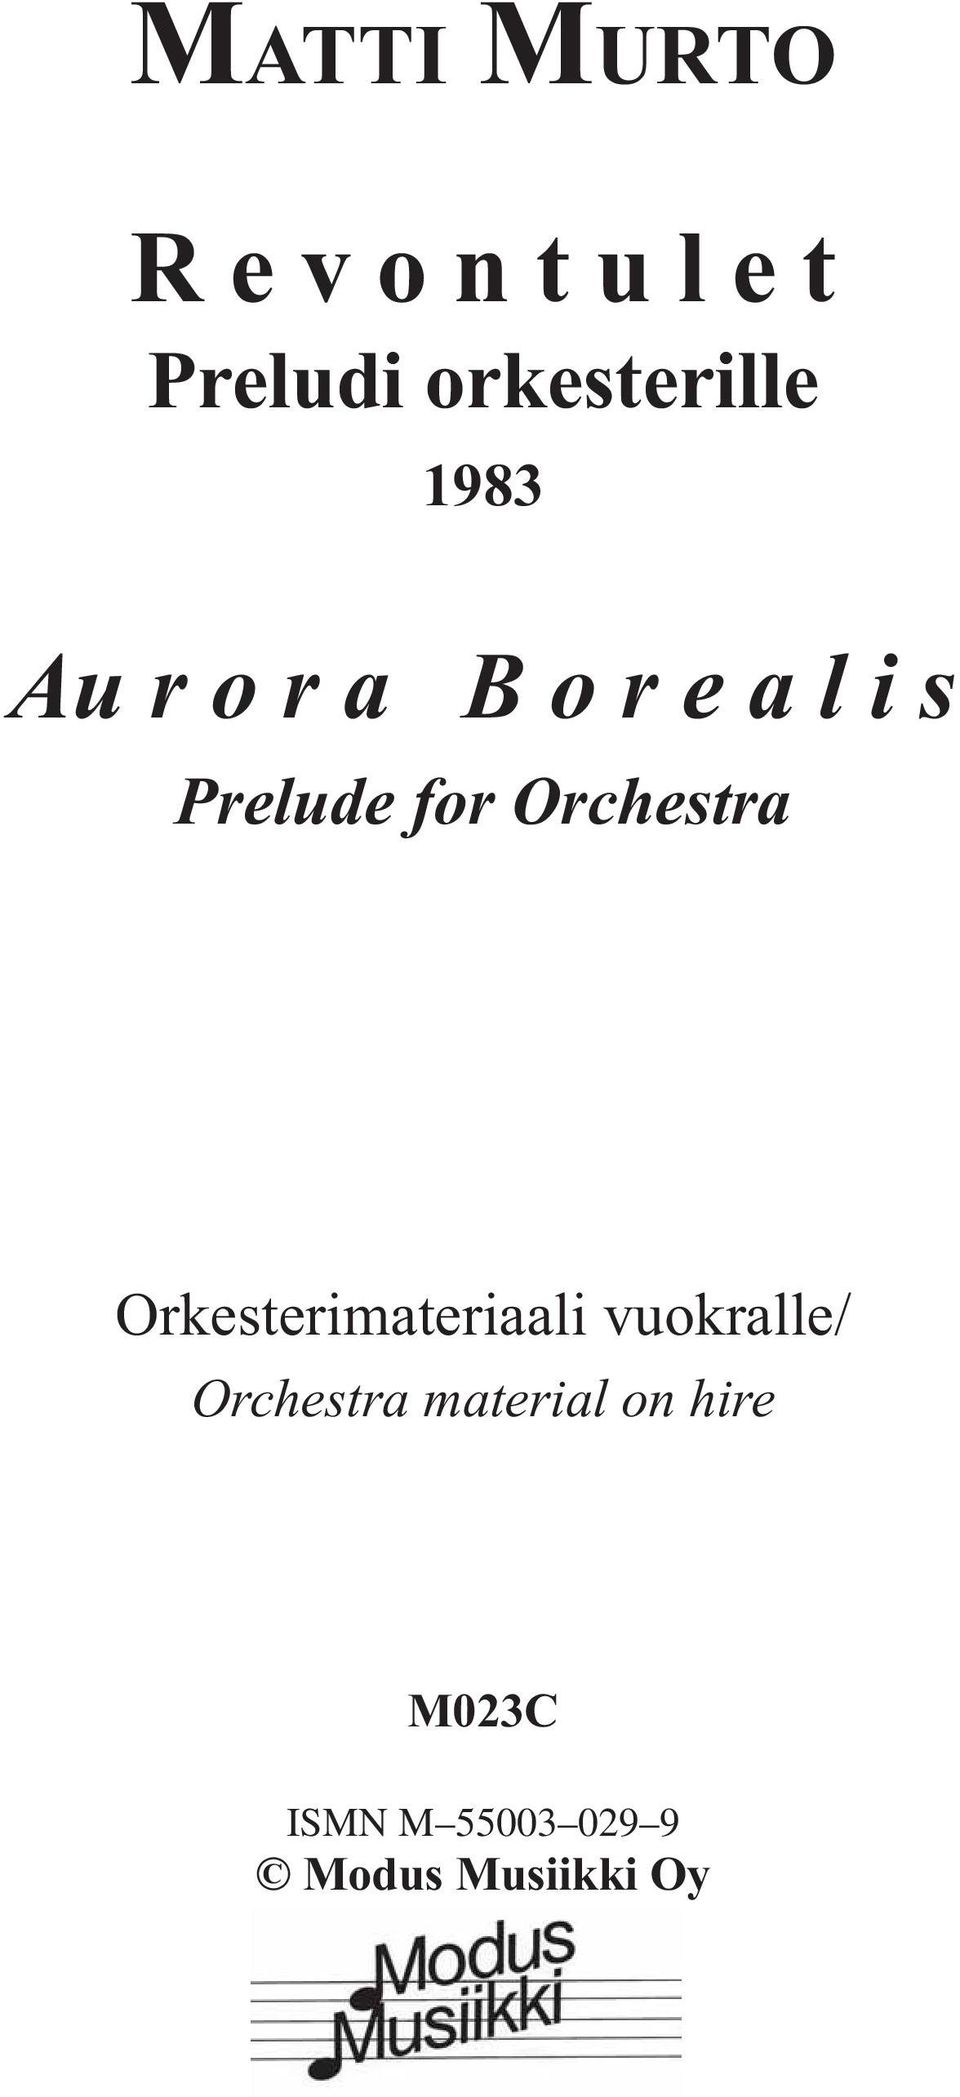 Prelude for Orchestra Orkesterimateriaali